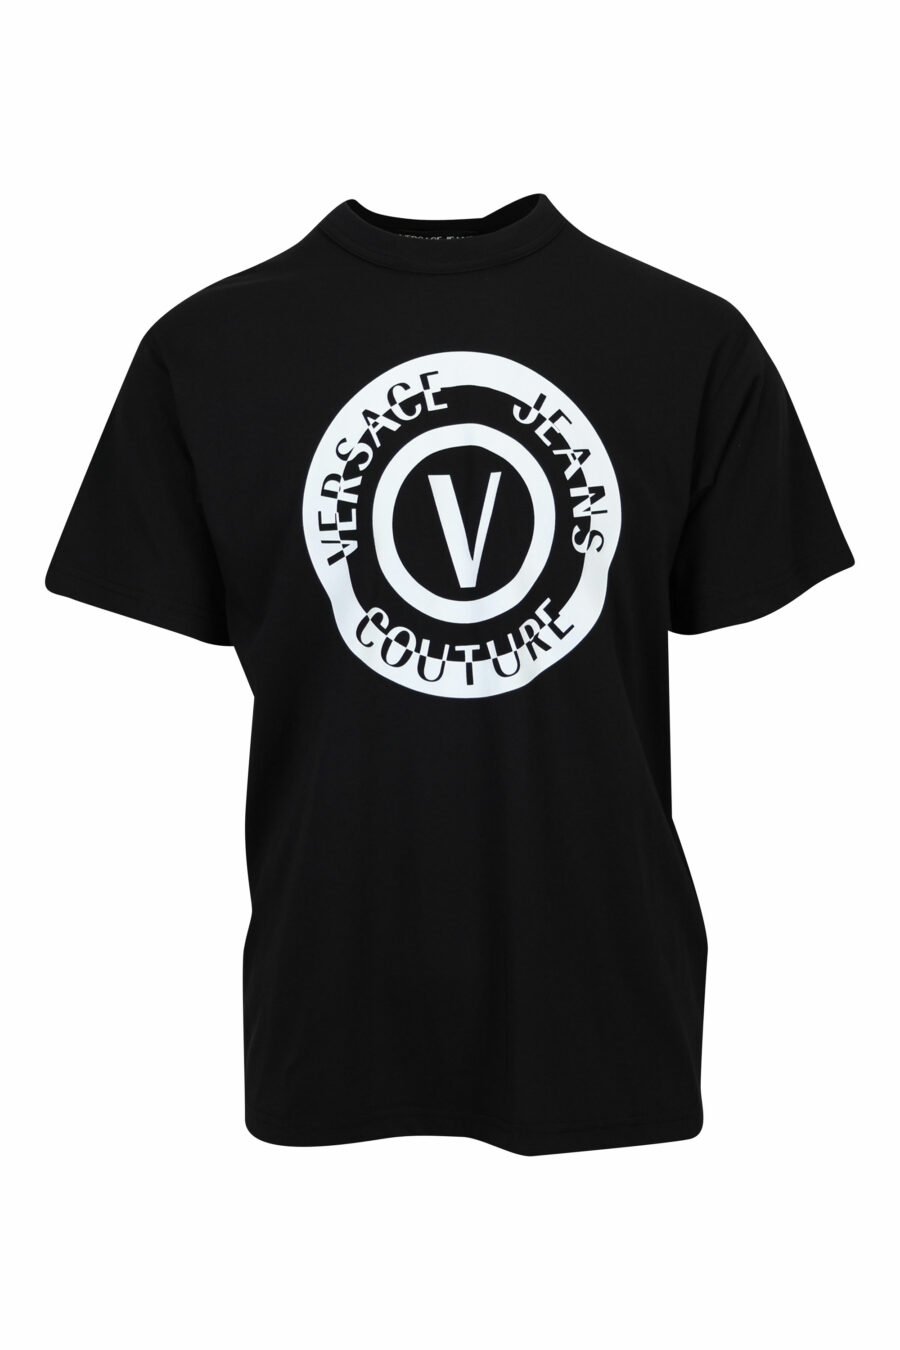 Camiseta negra con maxilogo circular blanco - 8052019580440